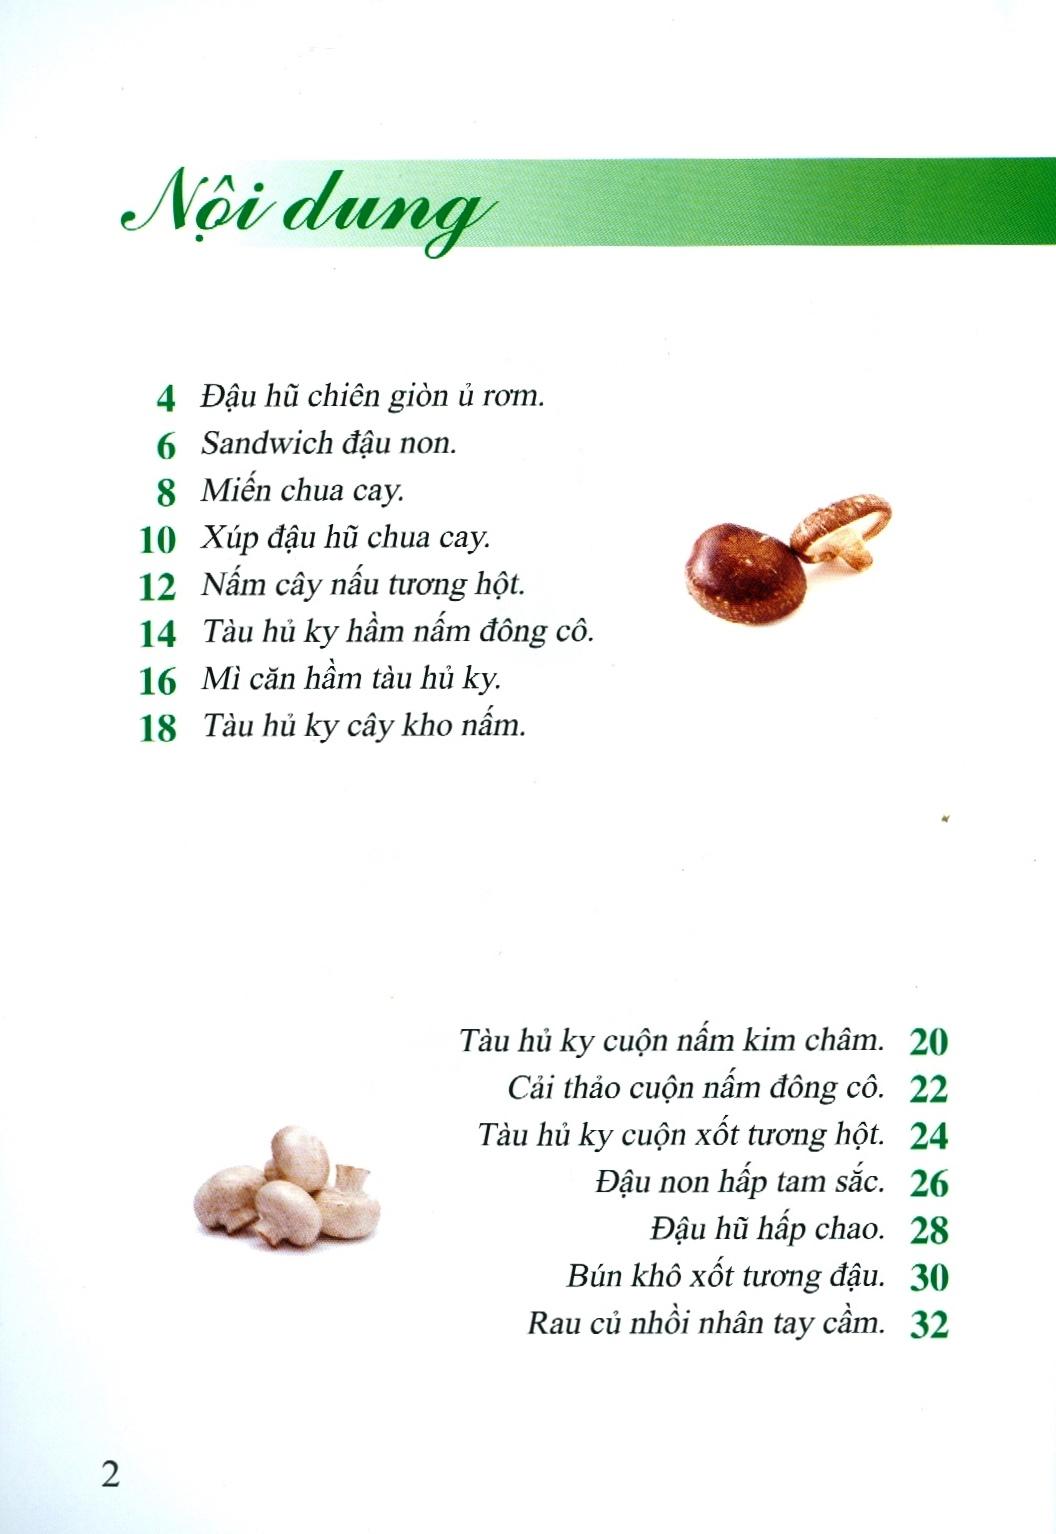 500 Món Chay Thanh Tịnh - Tập 11 PDF